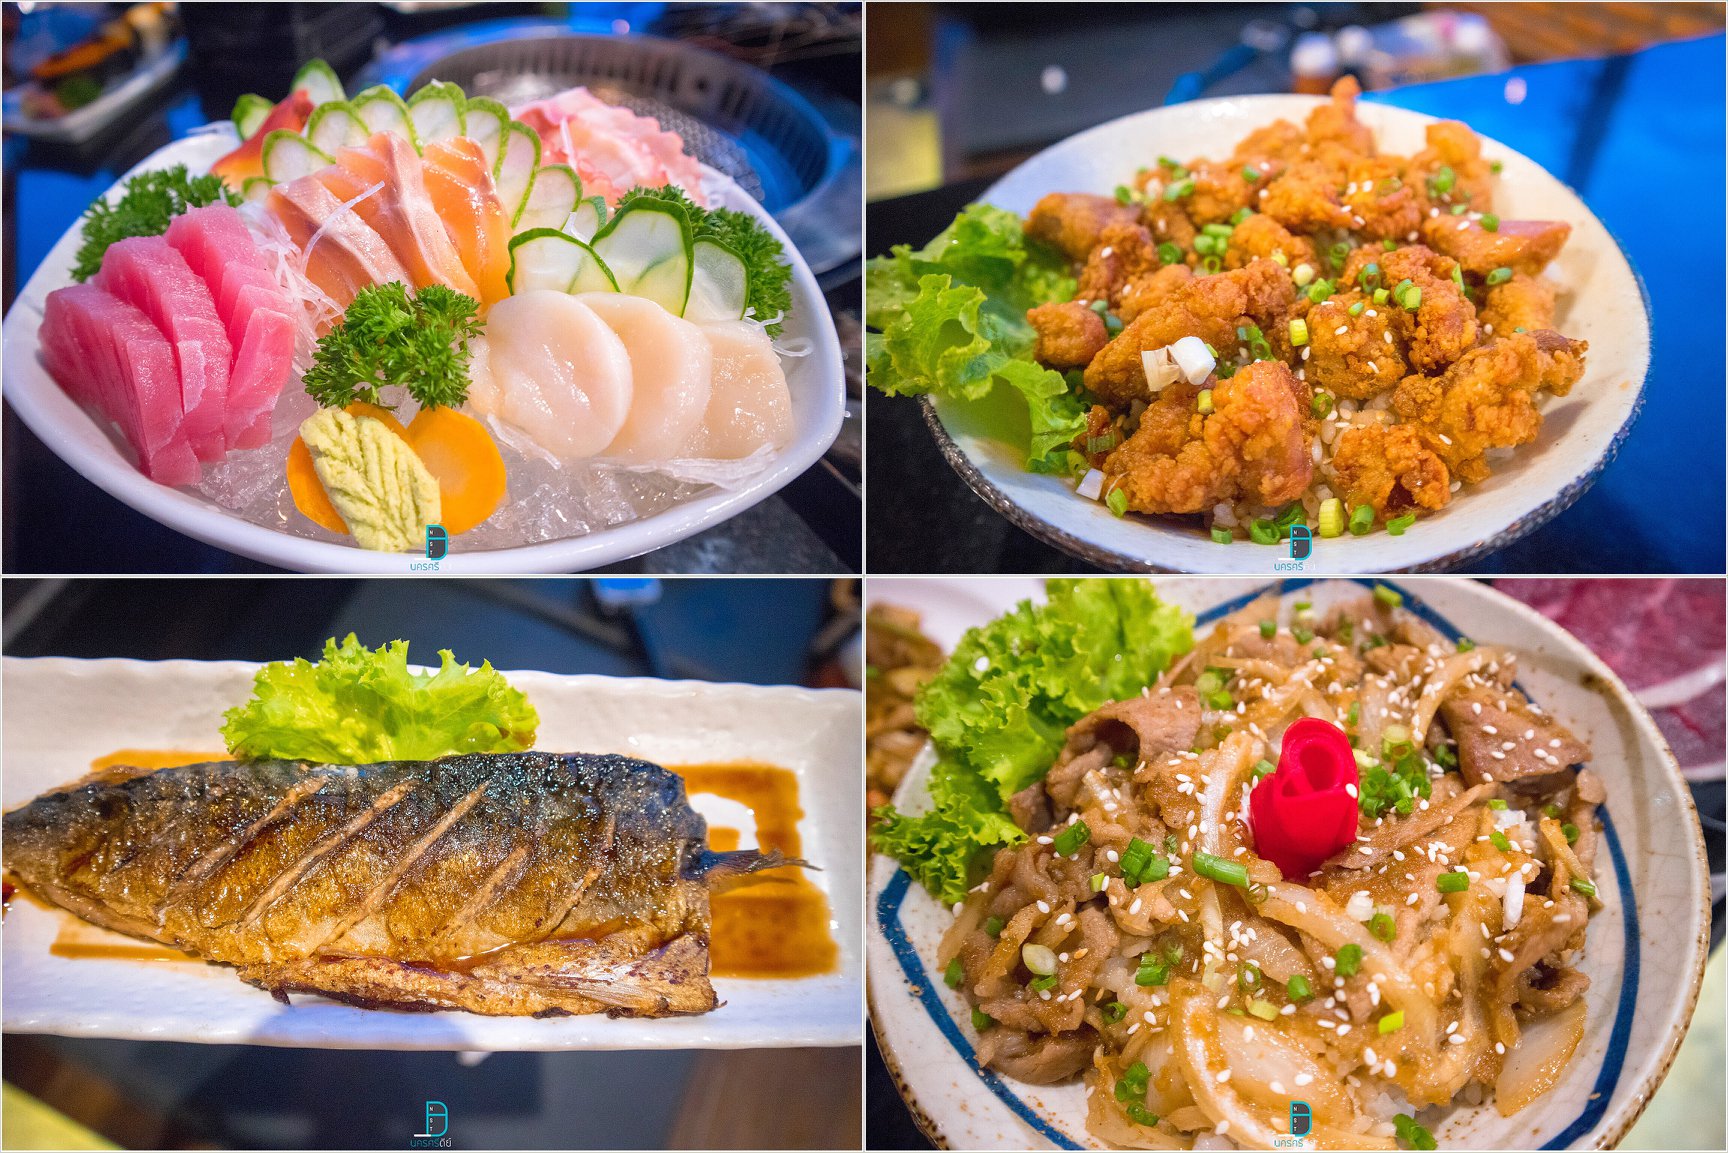   นัมบะ,namba,ชาบู,ปิ้งย่าง,นครศรีธรรมราช,ของกิน,ร้านอร่อย,อาหารญี่ปุ่น